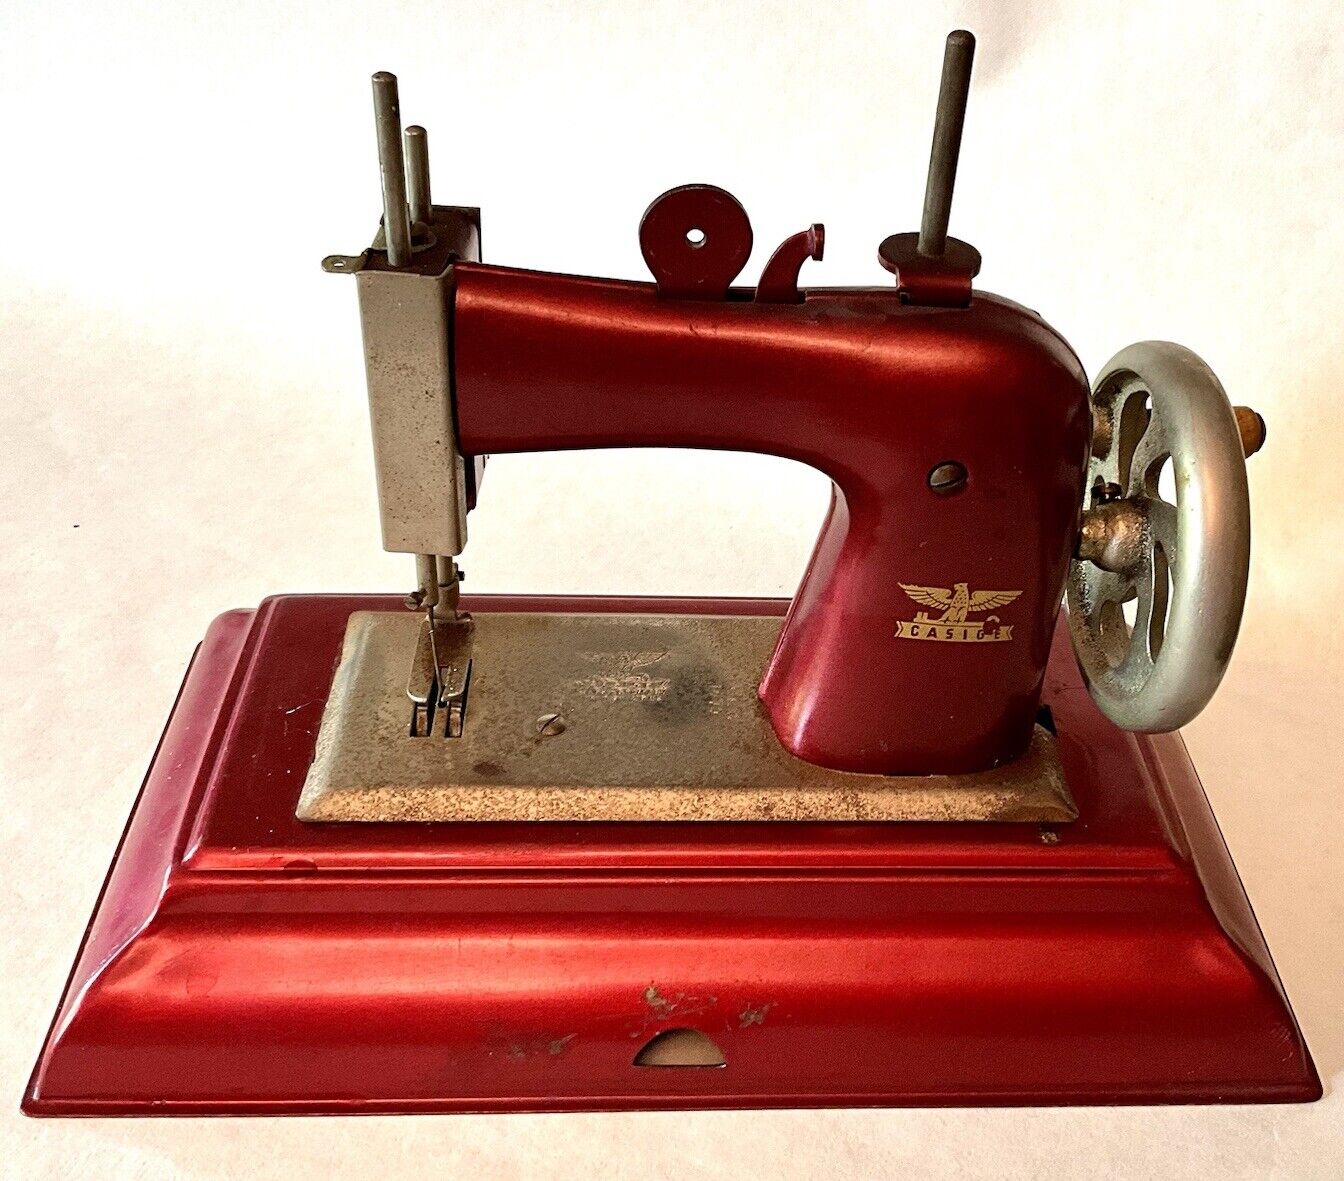 Vintage 1945-1955 Casige Childs' Sewing Machine Made German British Zone Working